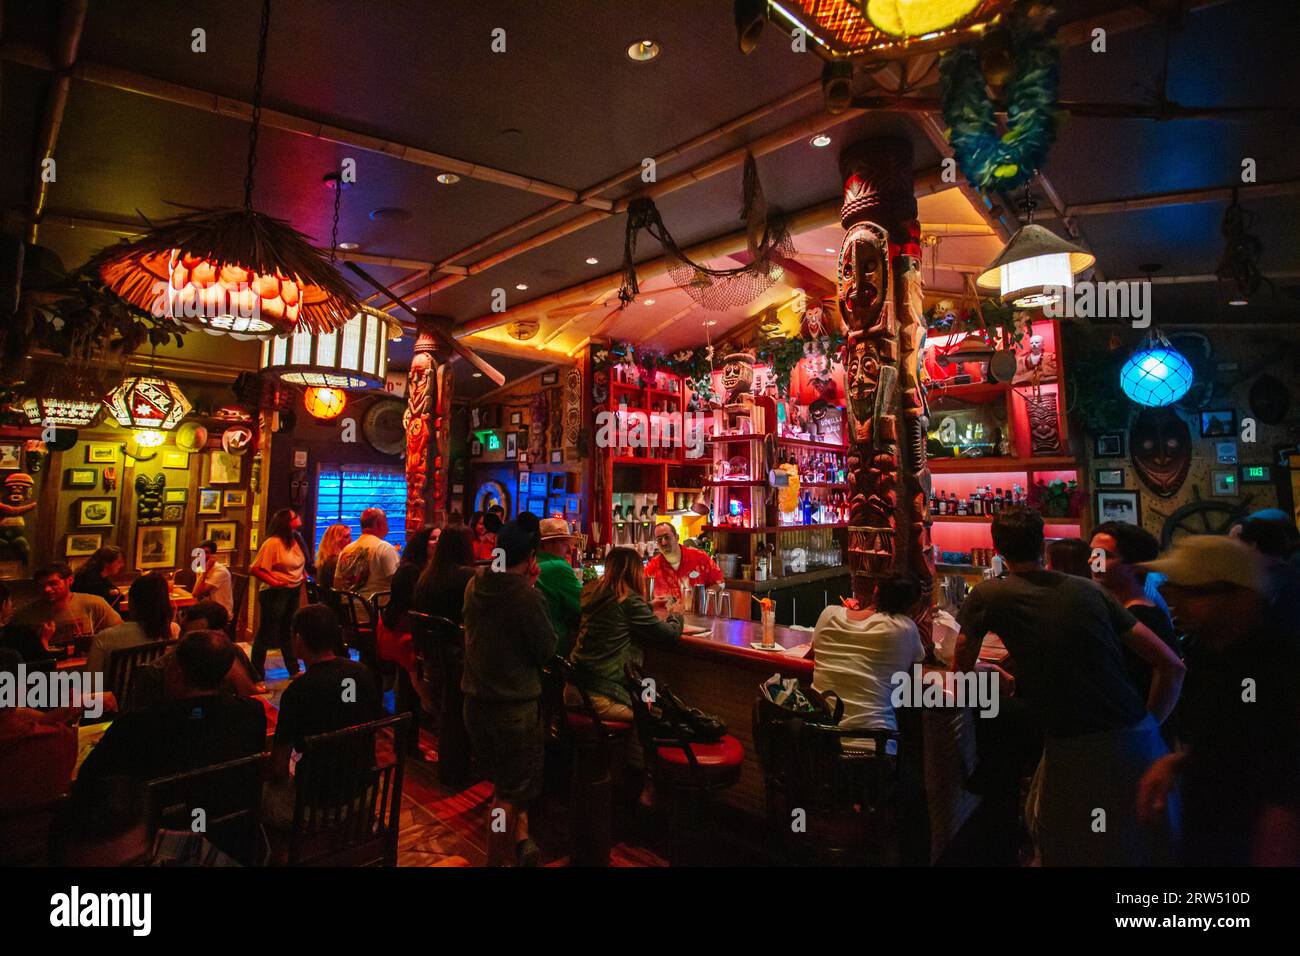 Los Angeles, USA, 13. Juli 2014: Trader Sam's Enchanted Tiki Bar in der Nähe von Disneyland in Anaheim, Los Angeles Stockfoto